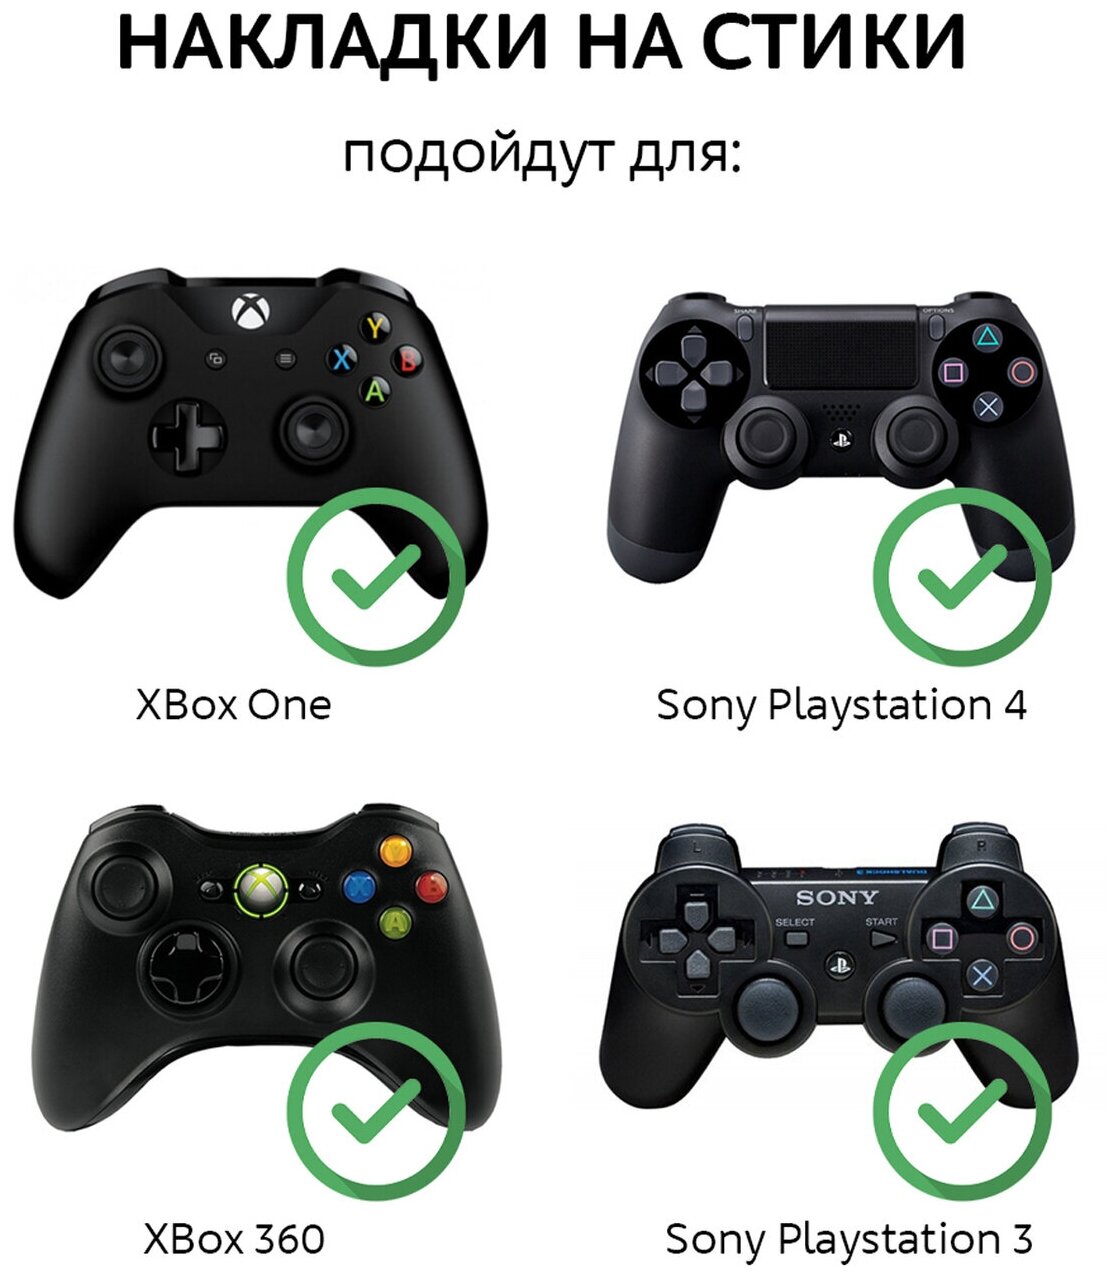 Накладки Grips на аналоговые стики для джойстика PS4, PS3, Xbox 360, Xbox One, черные 4 шт.